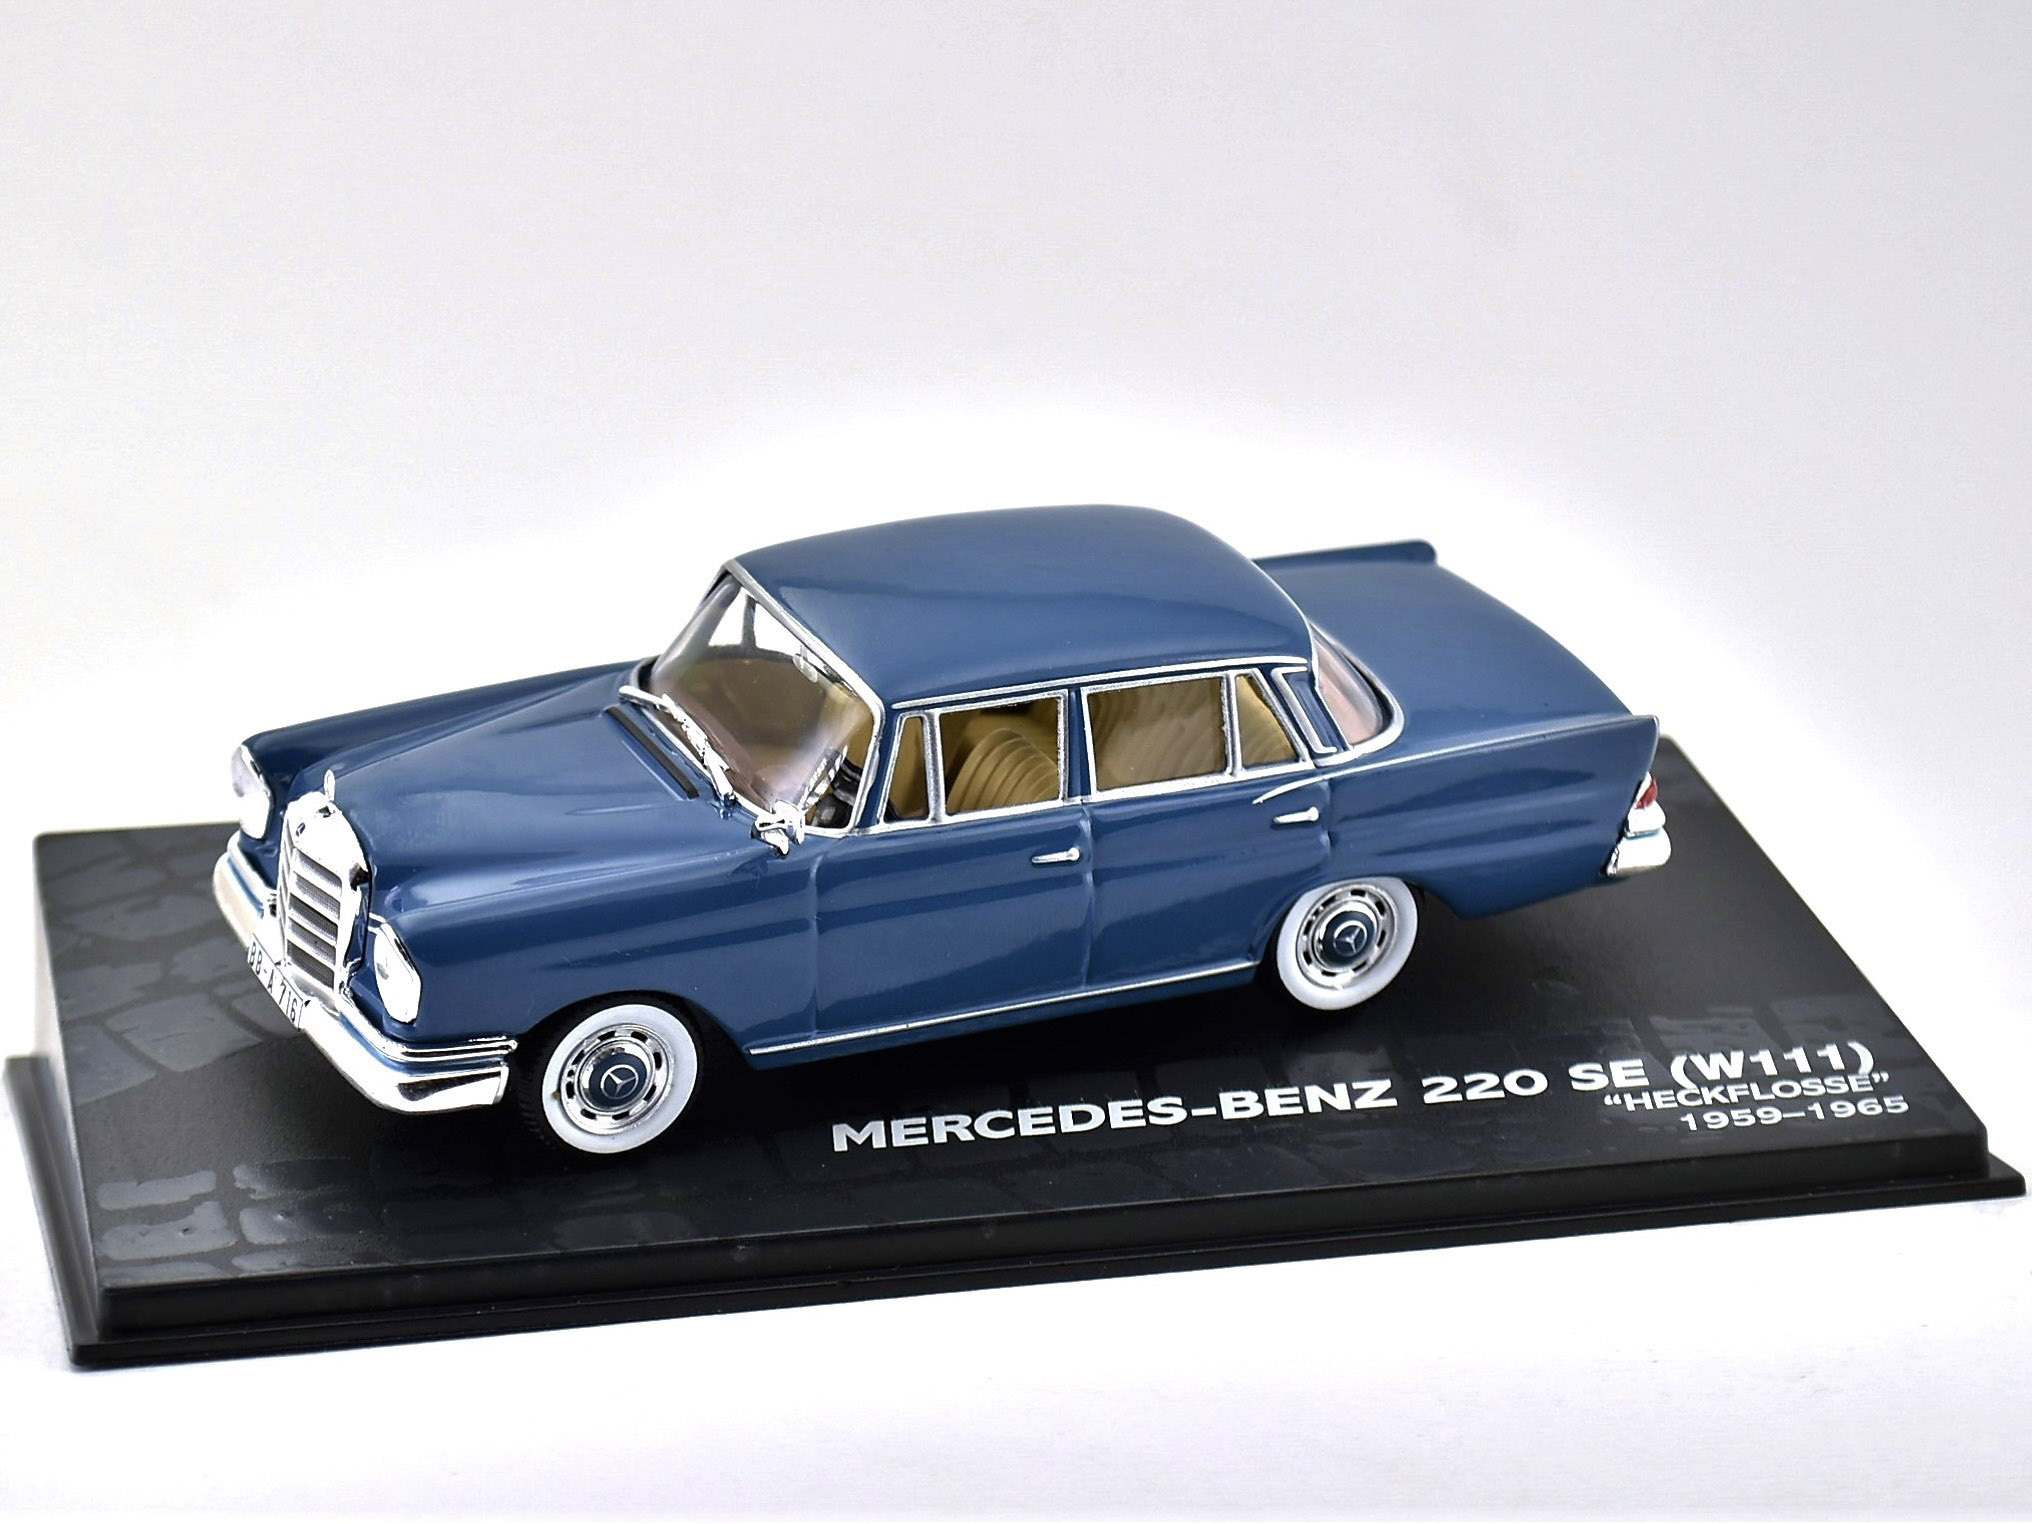 MERCEDES-BENZ 220 SE (W111) - "Heckflosse" - 1959-1965